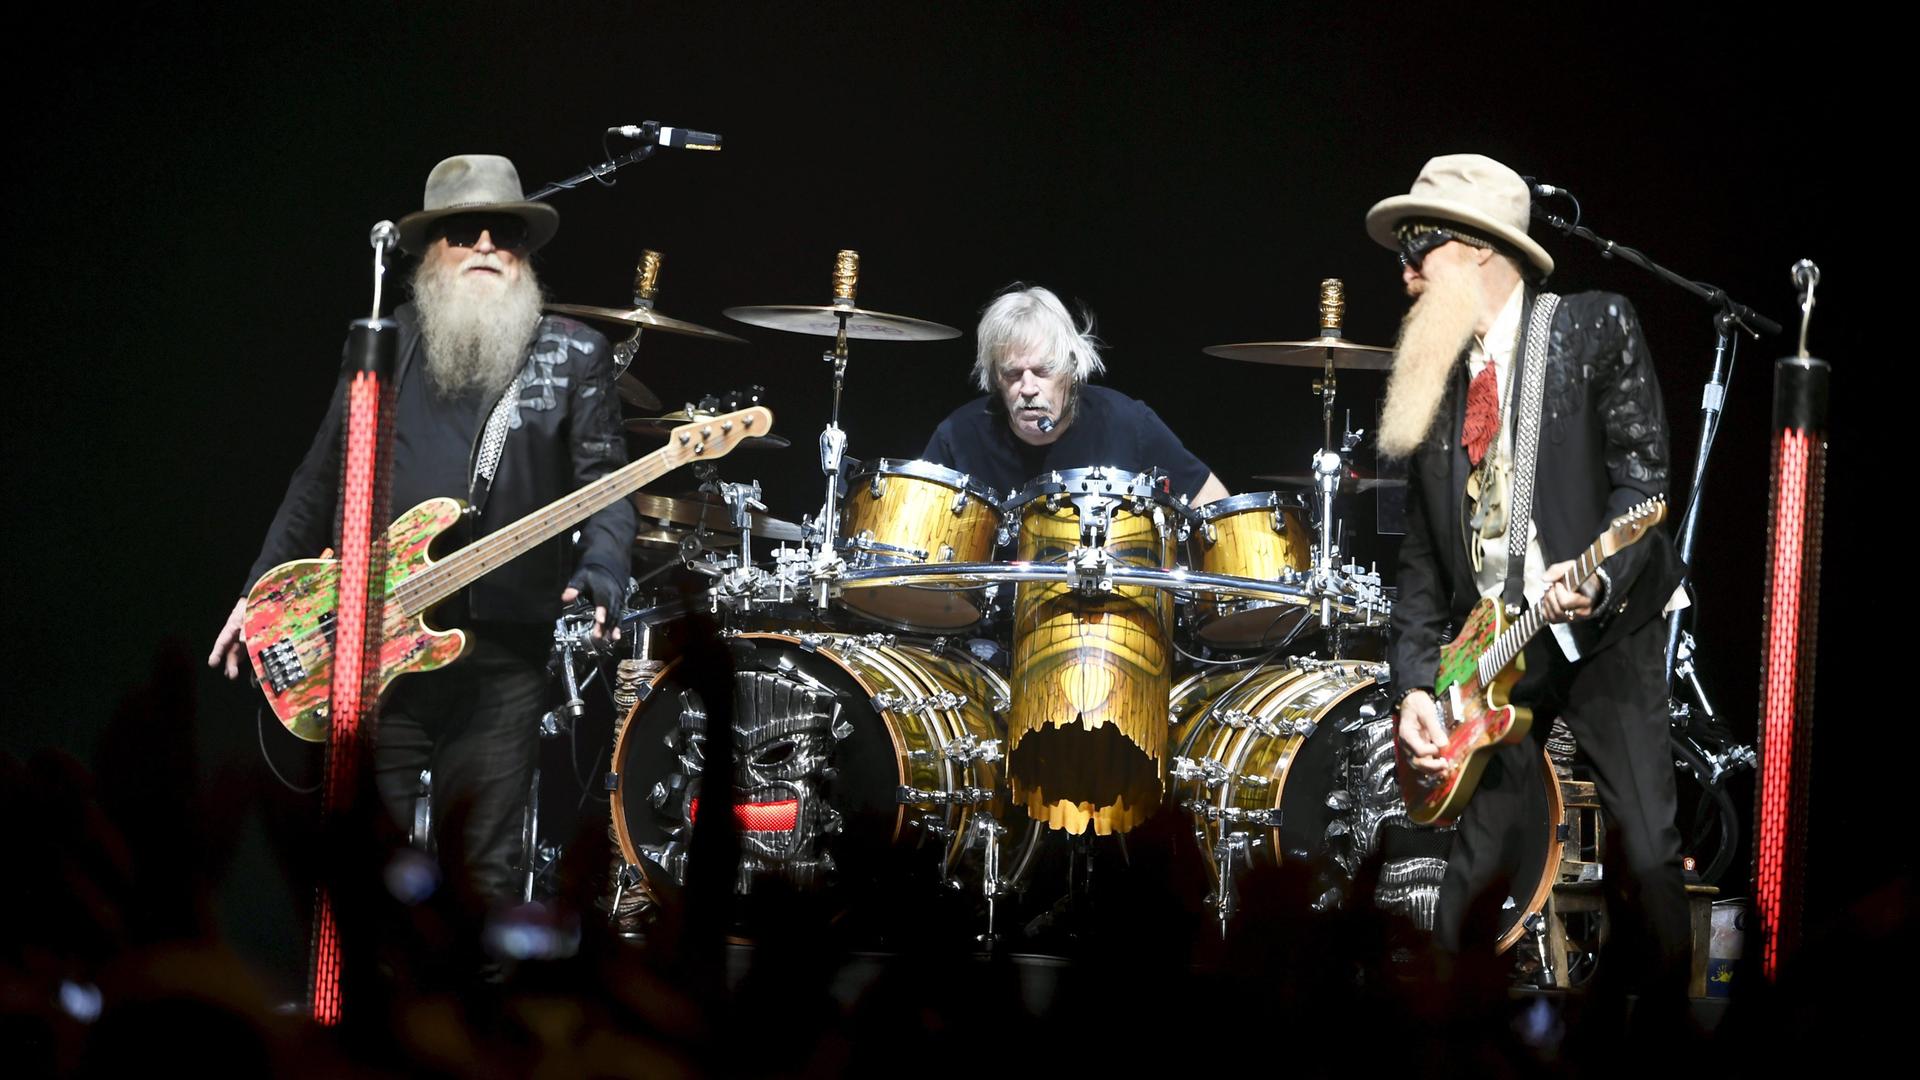 Die Band ZZ Top bei einem Auftritt in Helsinki: Rechts und links ein Mann mit langem Bart und einer E-Gitarre. In der Mitte sitzt ein dritter Mann an einem Schlagzeug, ohne Bart.